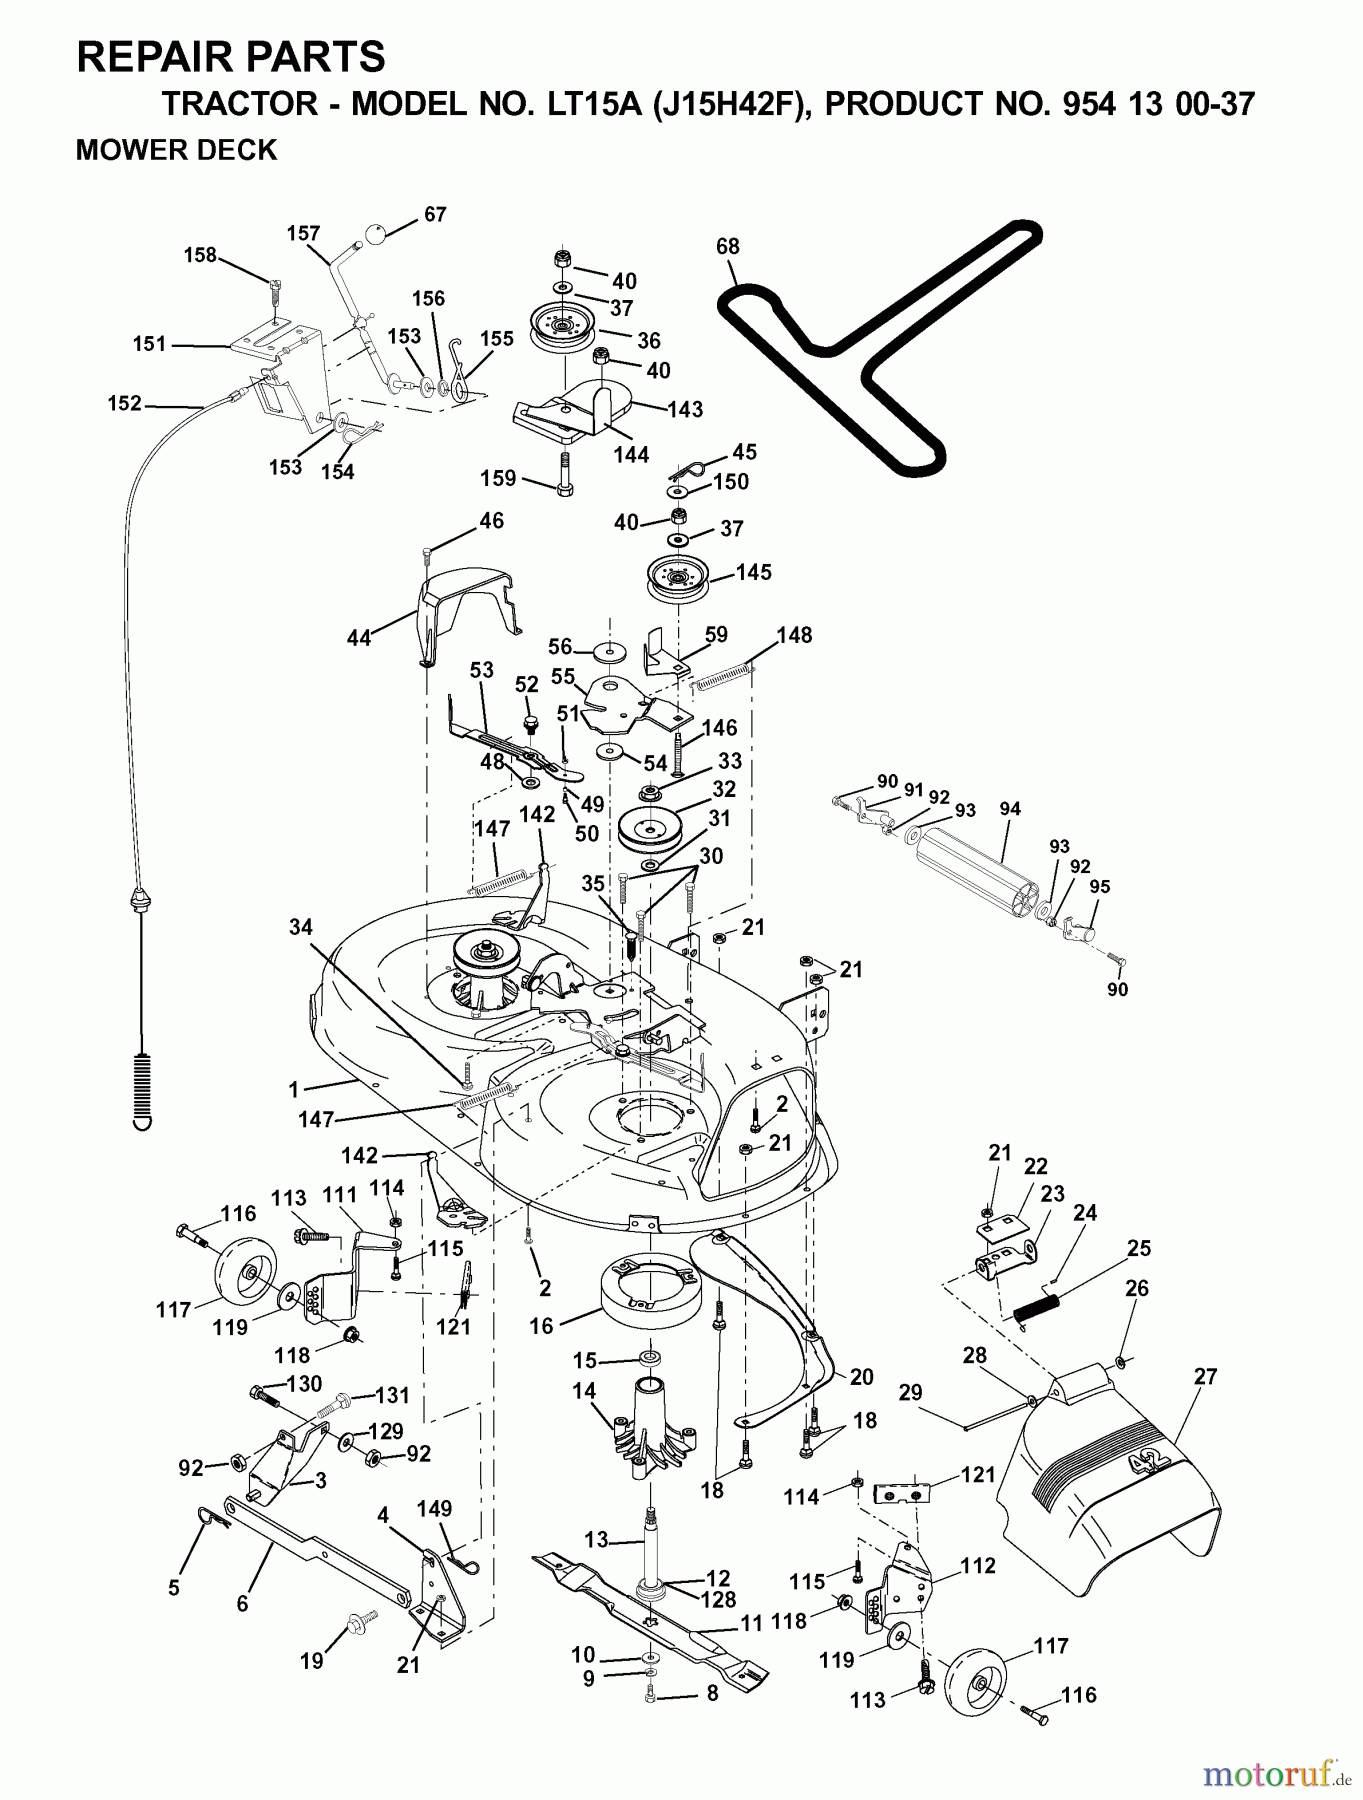  Jonsered Rasen  und Garten Traktoren LT15A (J15H42F, 954130037) - Jonsered Lawn & Garden Tractor (2000-04) MOWER DECK / CUTTING DECK